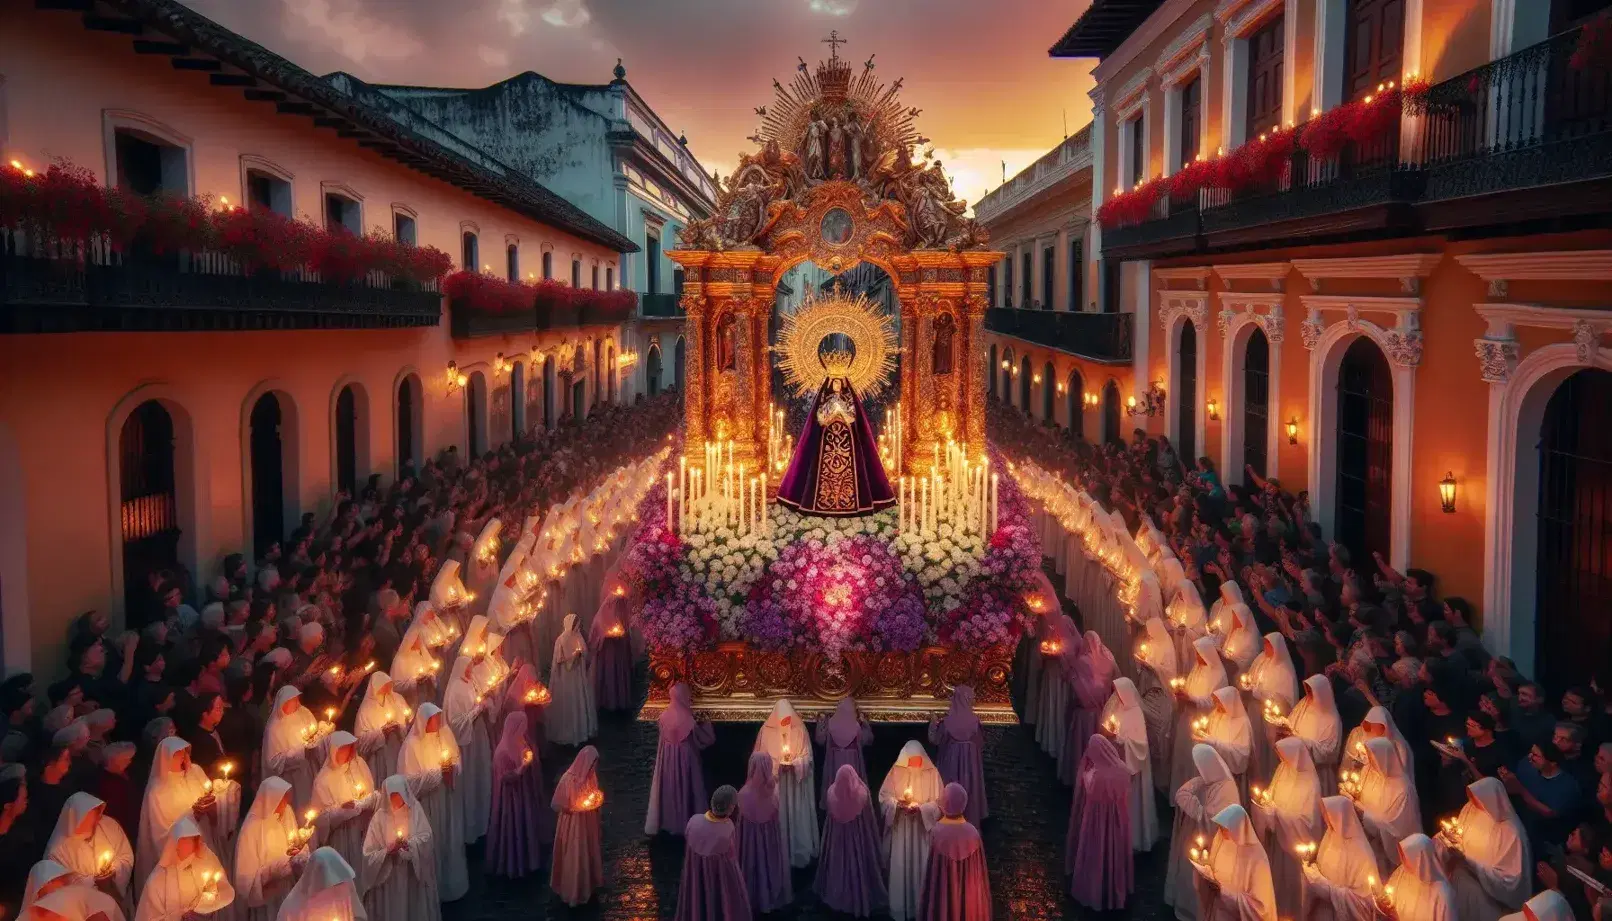 Procesión religiosa al atardecer con figura sagrada en andas florales, fieles en túnicas moradas y blancas con velas, y espectadores en calles empedradas.